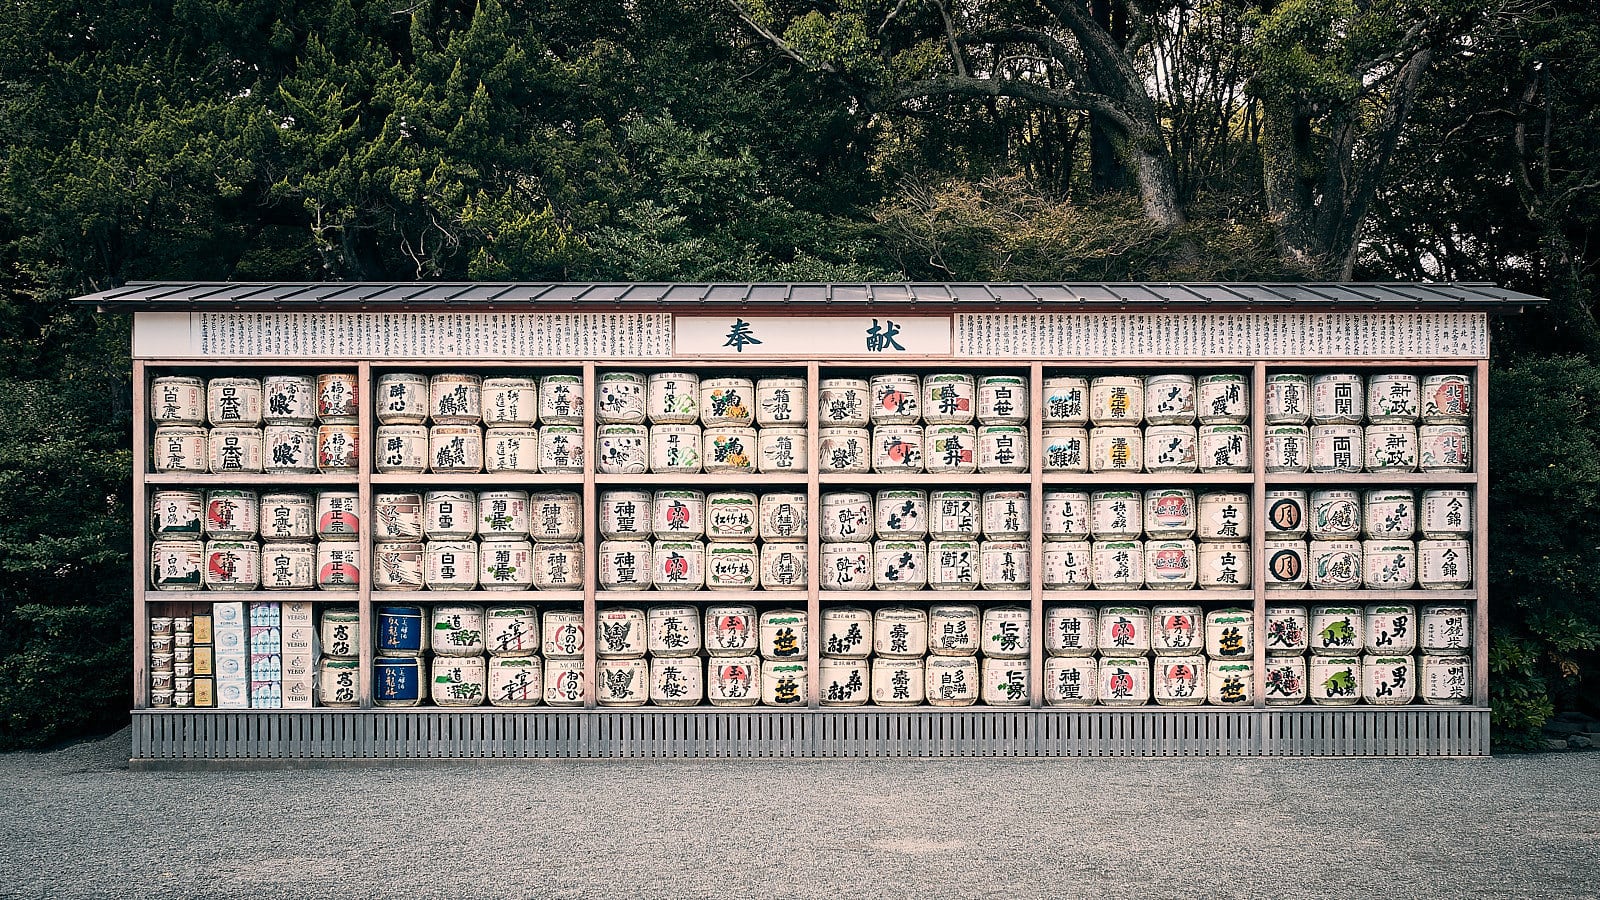 Templo Tsurugaoka Hachimangu, por Nacho Gutiérrez.